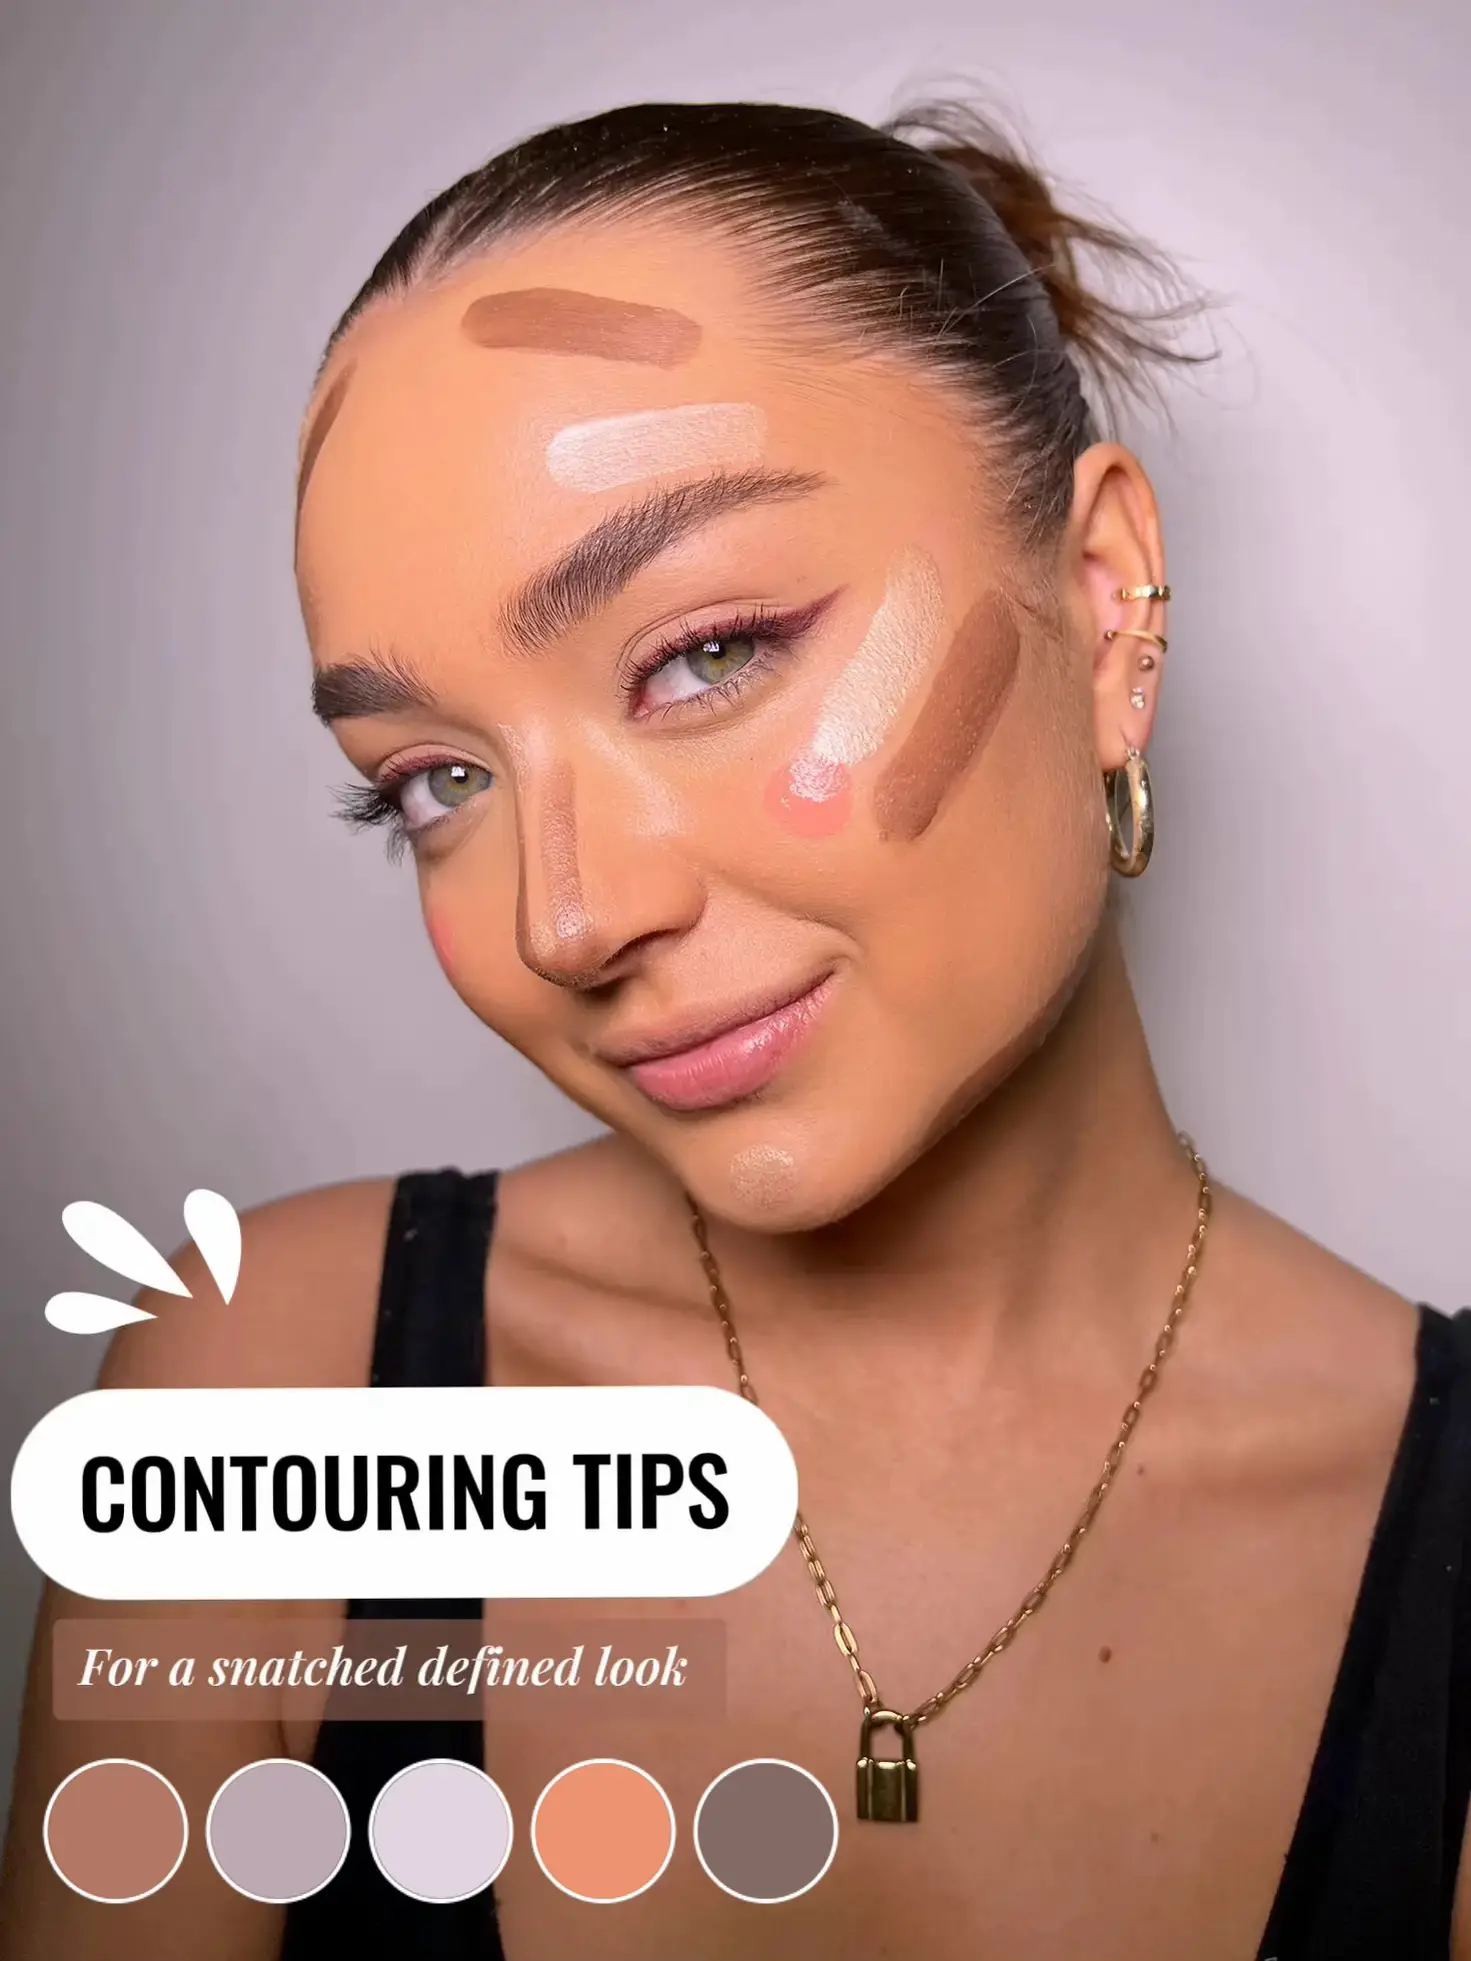 Face Lift with Makeup  Face contouring makeup, Makeup artist tips, Face  makeup tutorial